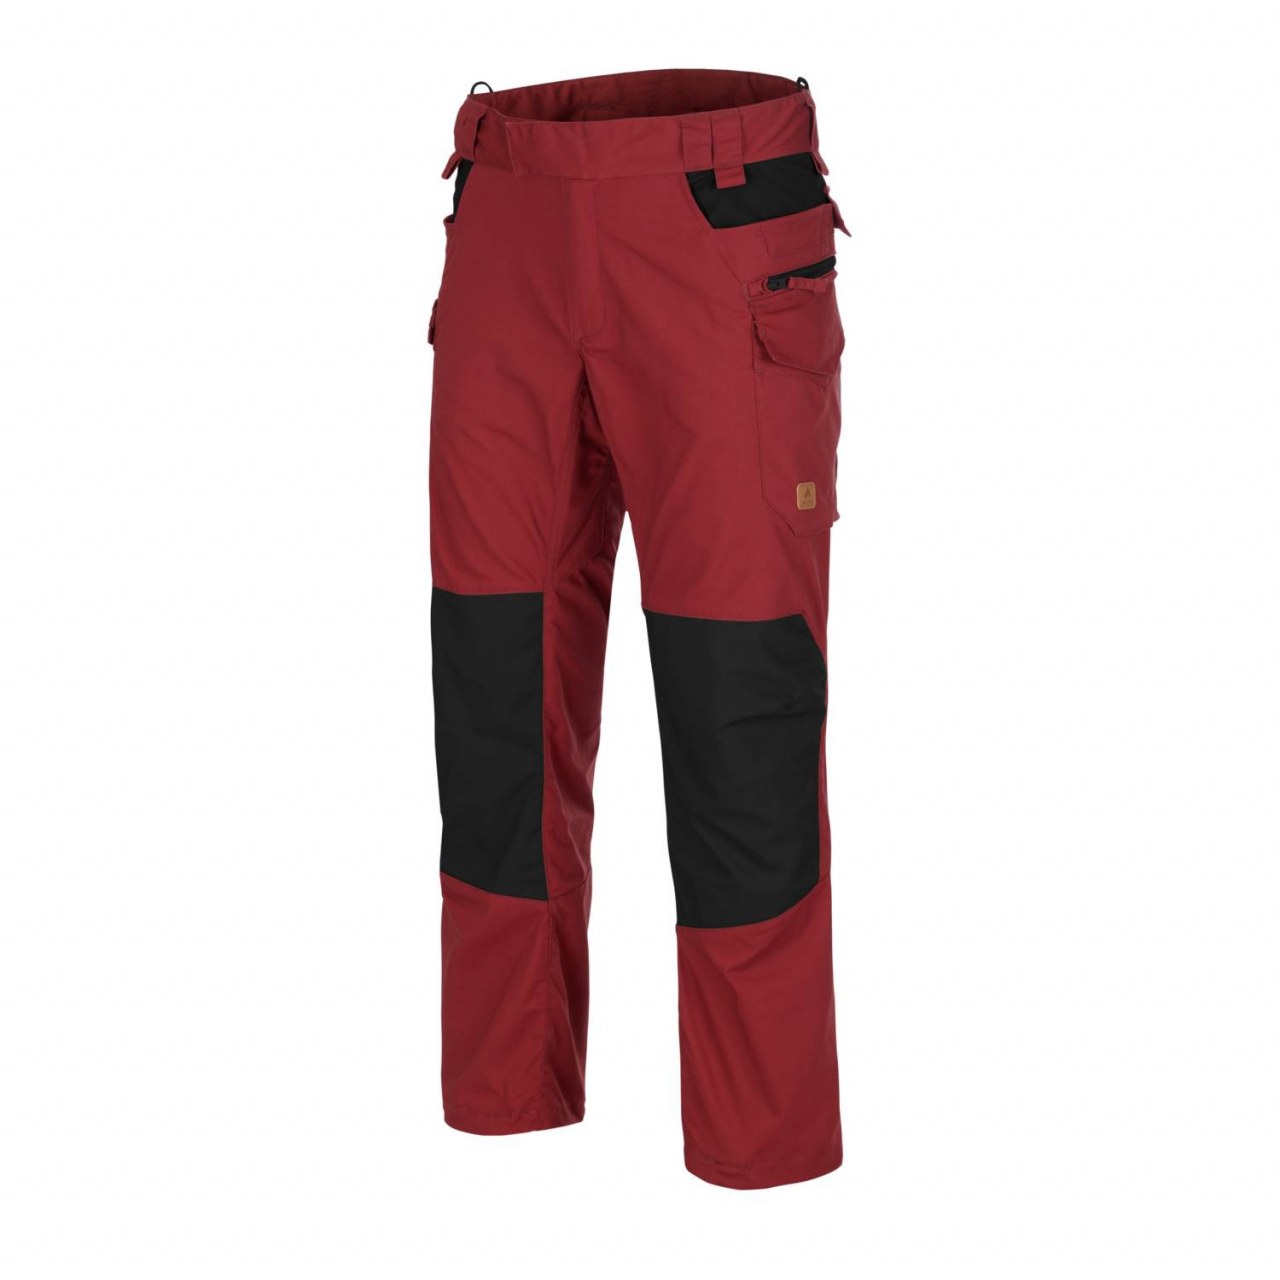 Kalhoty Helikon Pilgrim - červené-černé, S Long